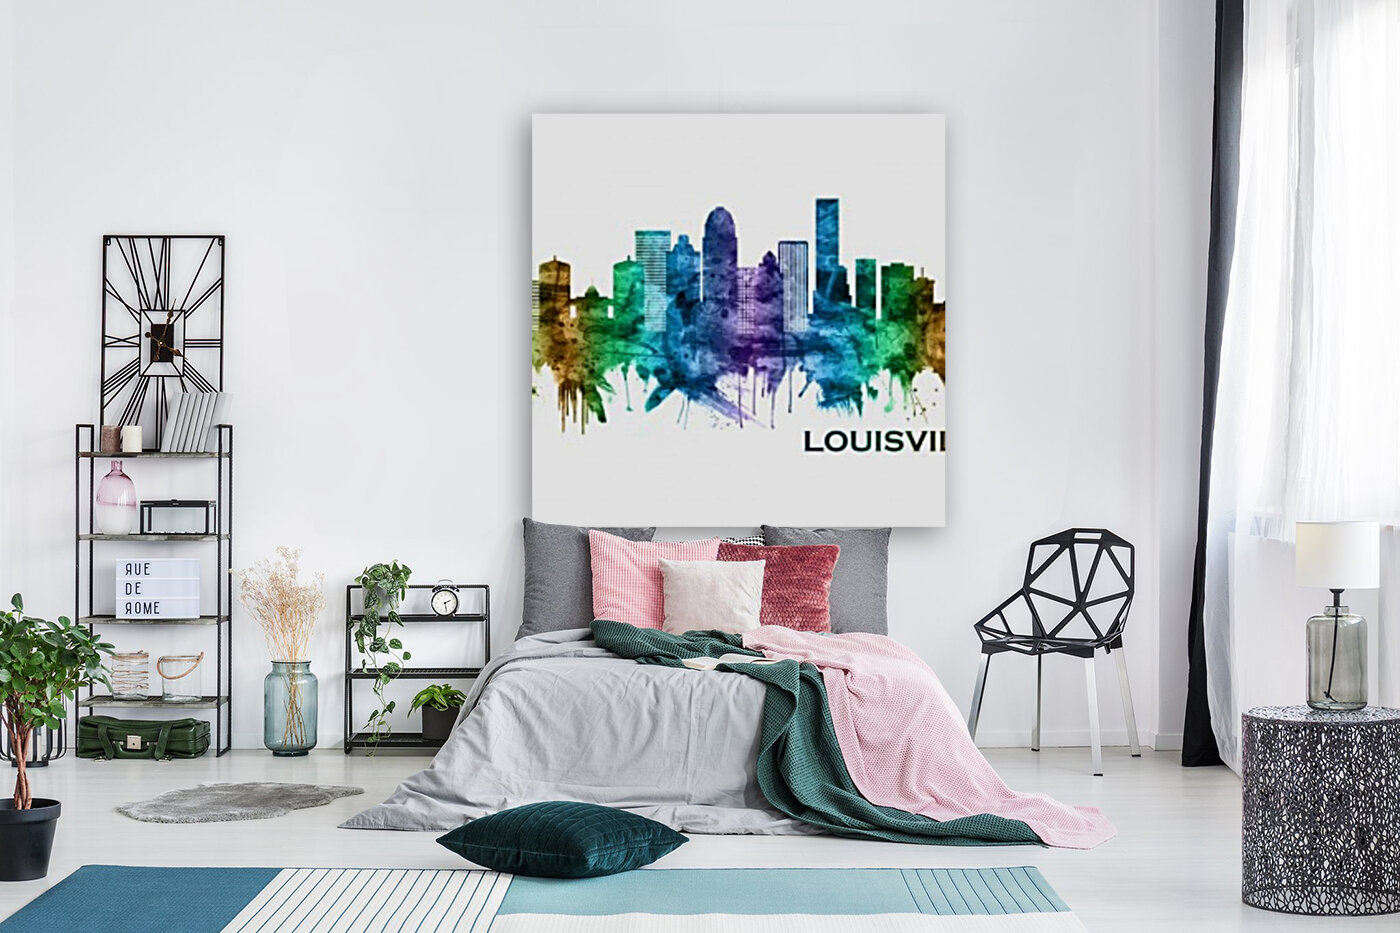 Louisville Kentucky Skyline, an art acrylic by Towseef Dar - INPRNT